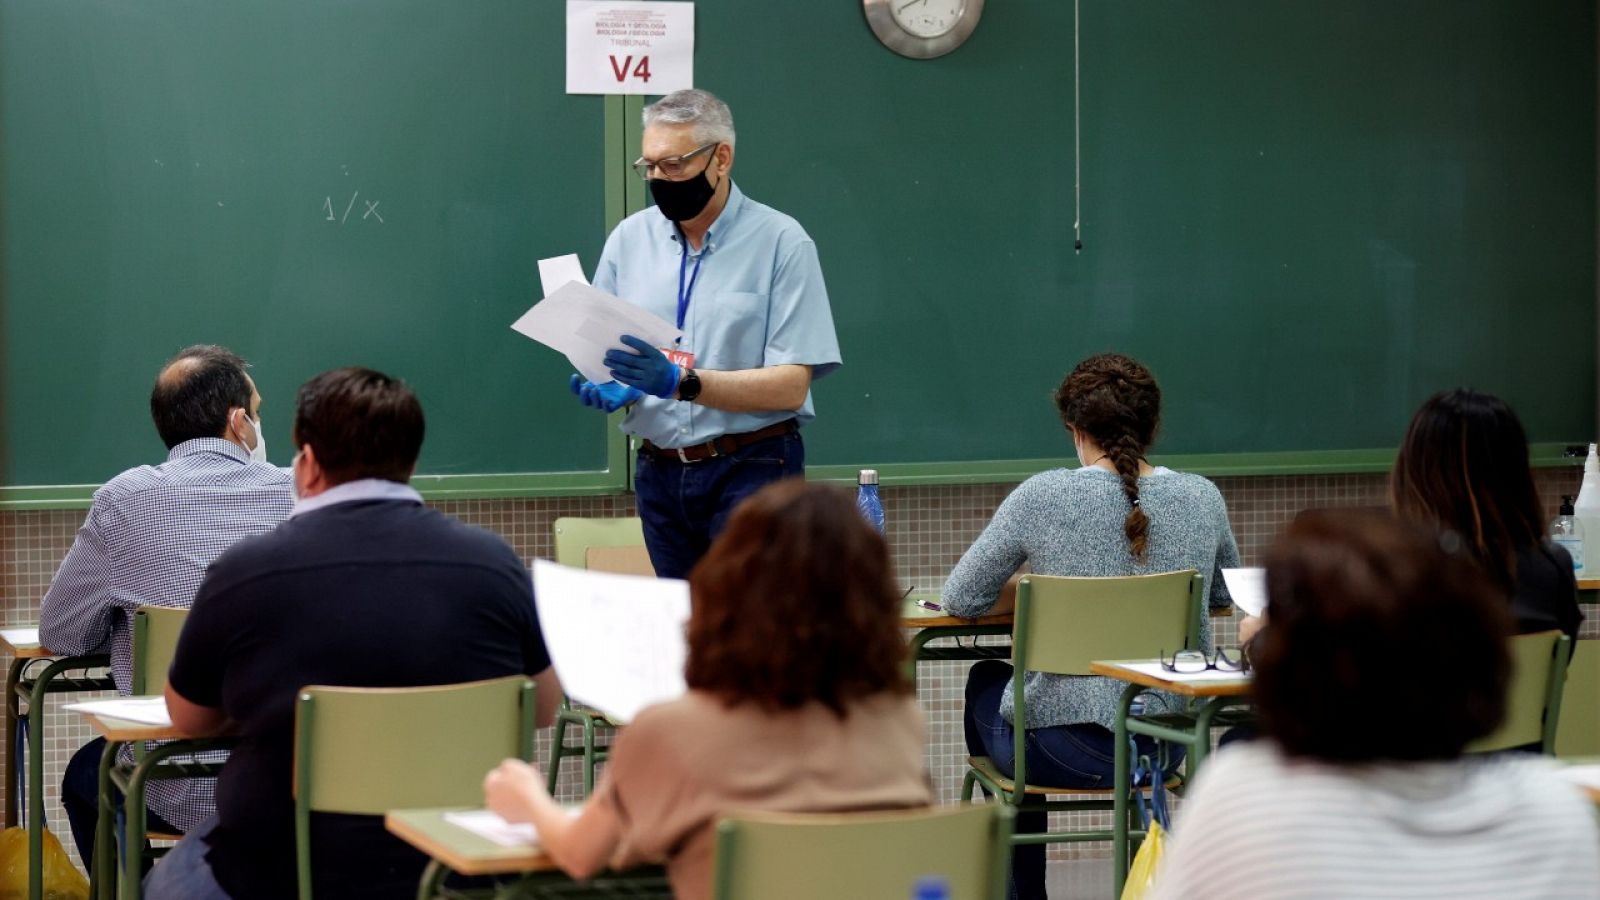 Vuelven las oposiciones a docentes tras el parón de la pandemia